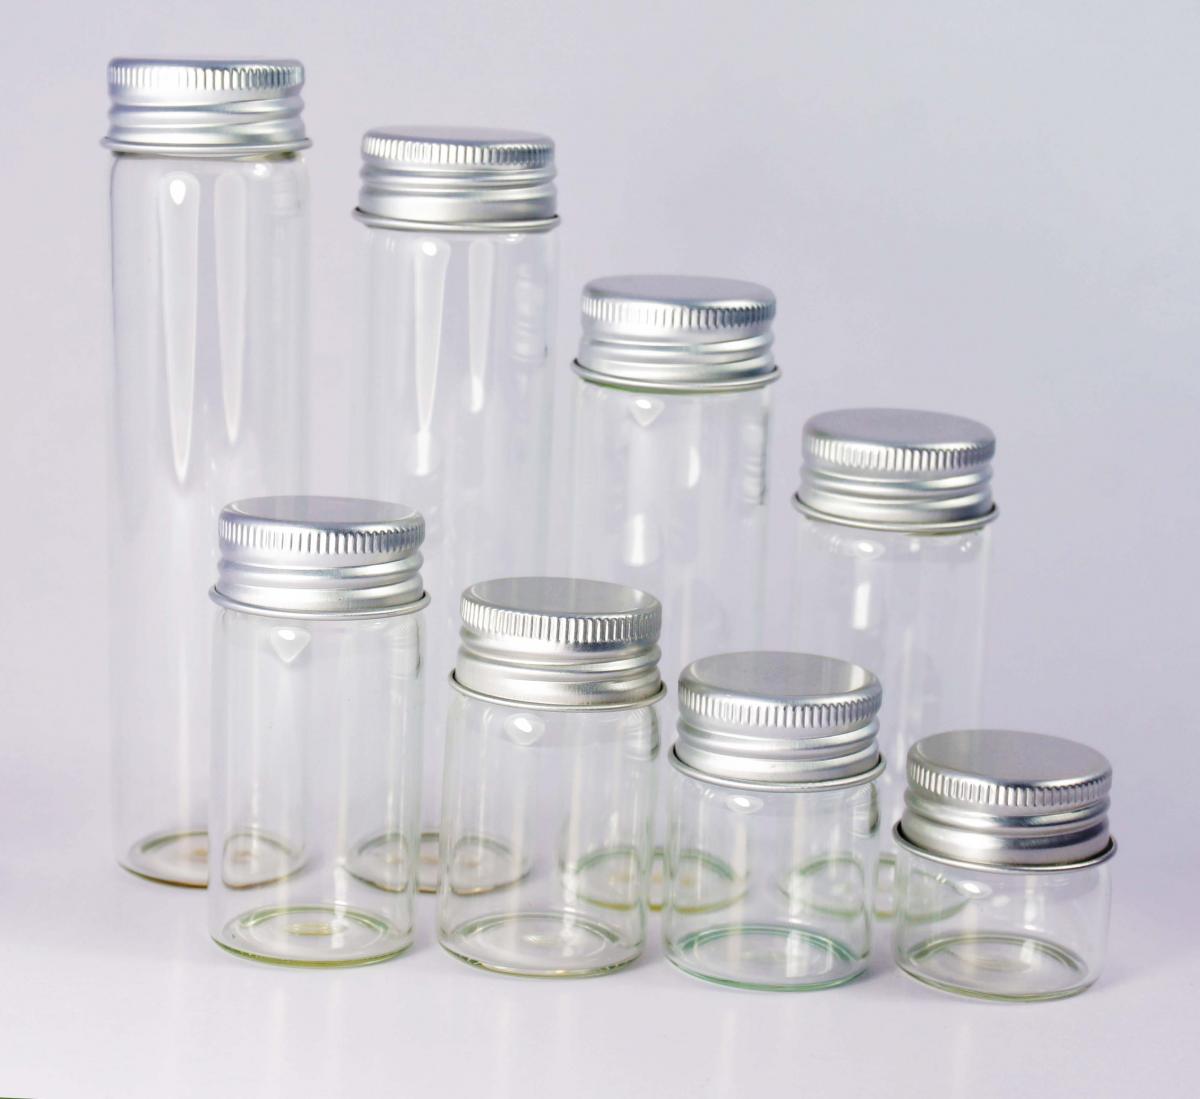 批发订制30MM直径铝盖玻璃瓶 工艺饰品包装瓶